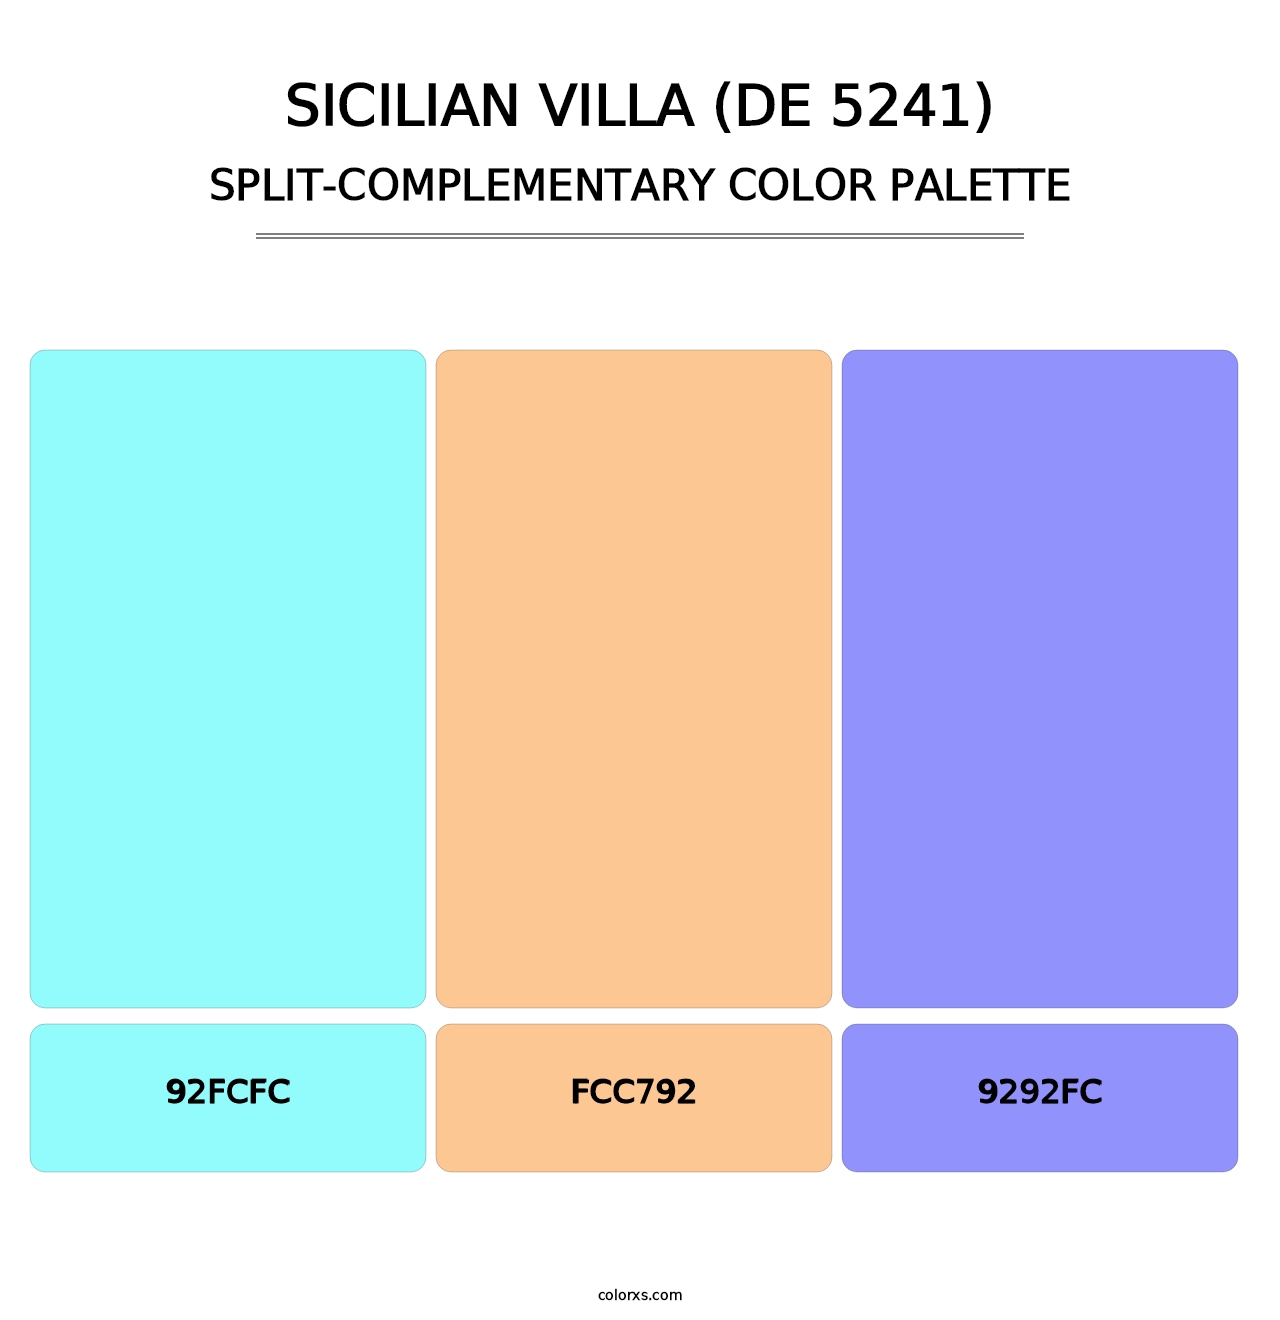 Sicilian Villa (DE 5241) - Split-Complementary Color Palette